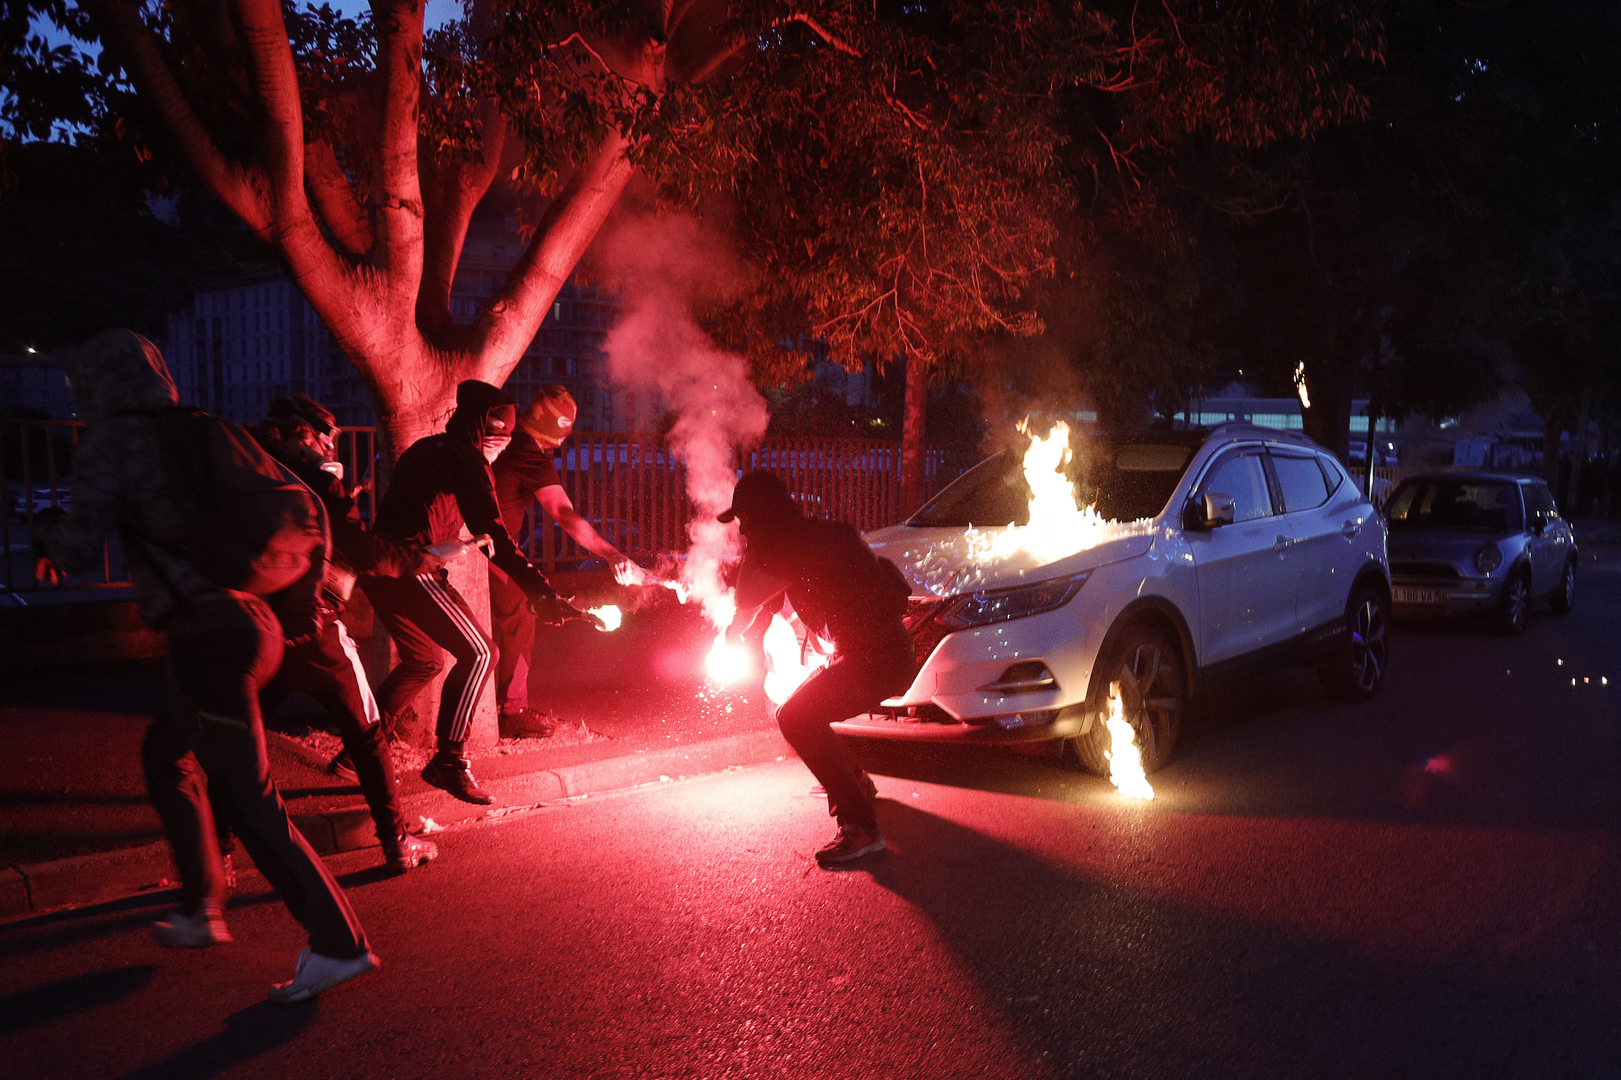 Corse Une Manifestation Commémorant Yvan Colonna émaillée De Violences Contre La Police — Rt